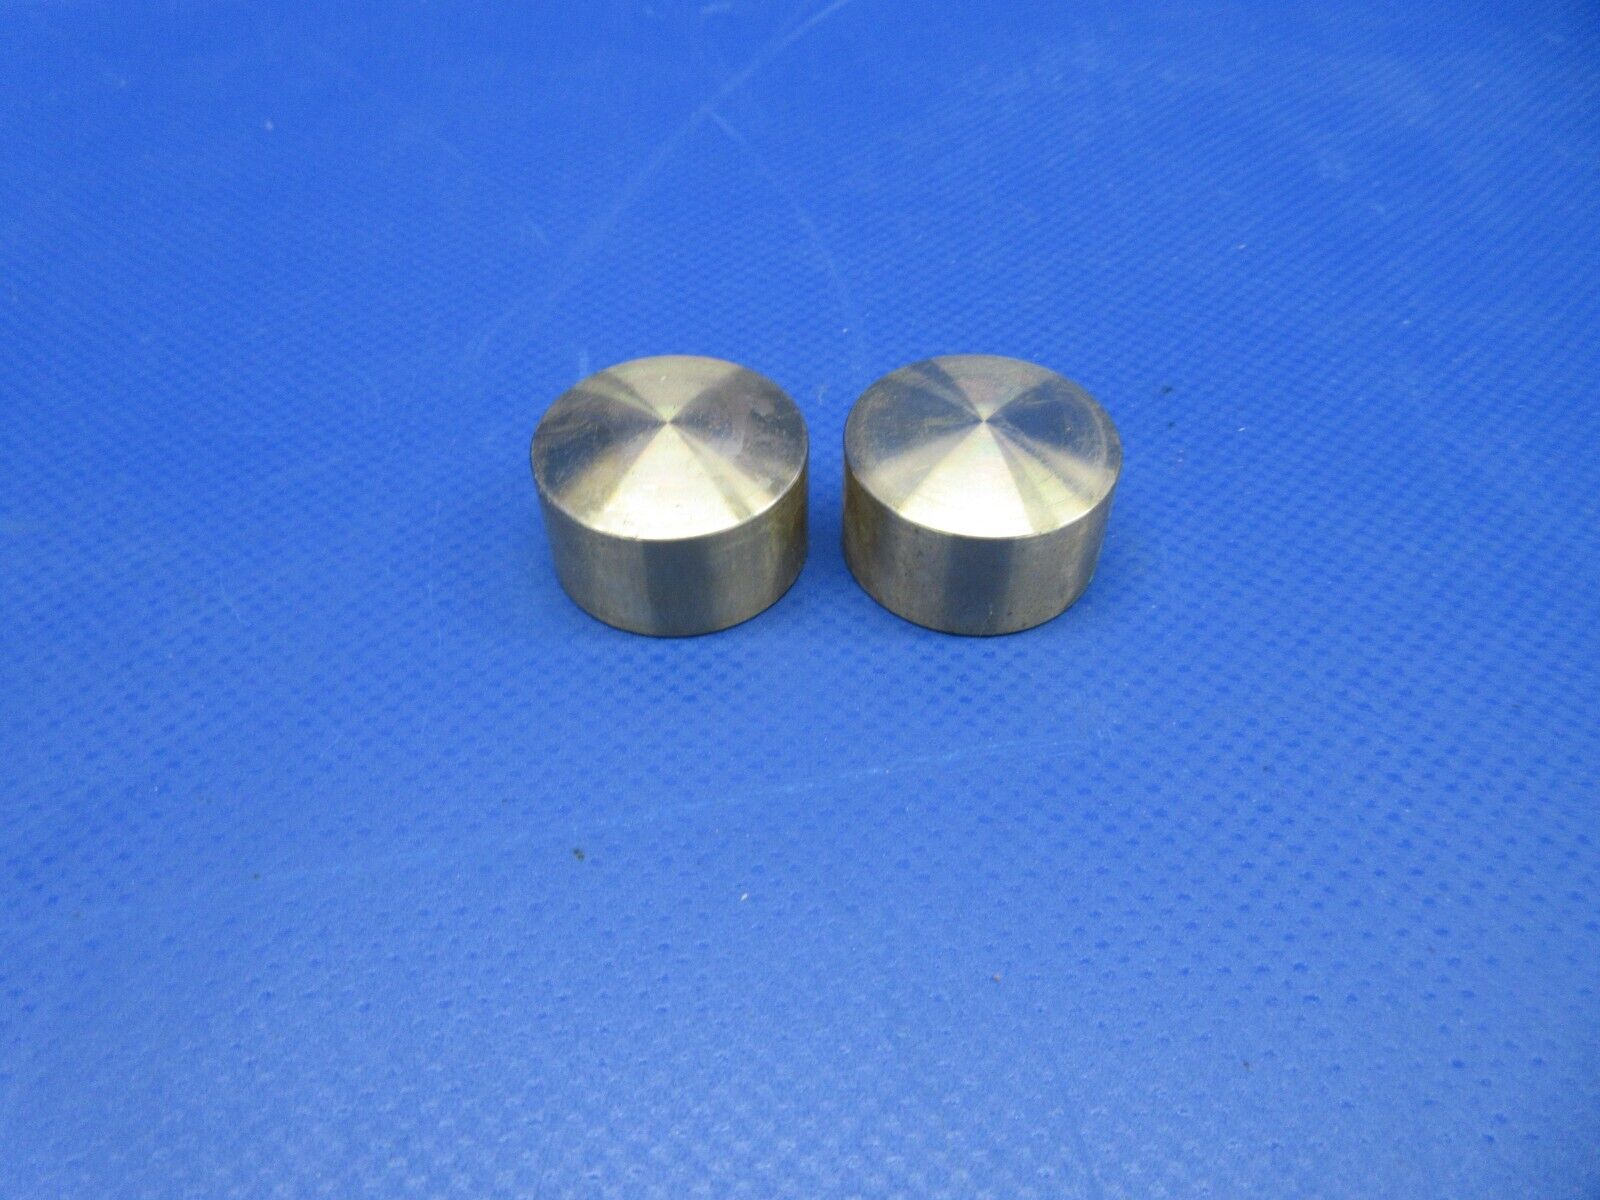 Lycoming Brass Piston Pin Plug P/N 72198 LOT OF 2 NOS (0324-650)